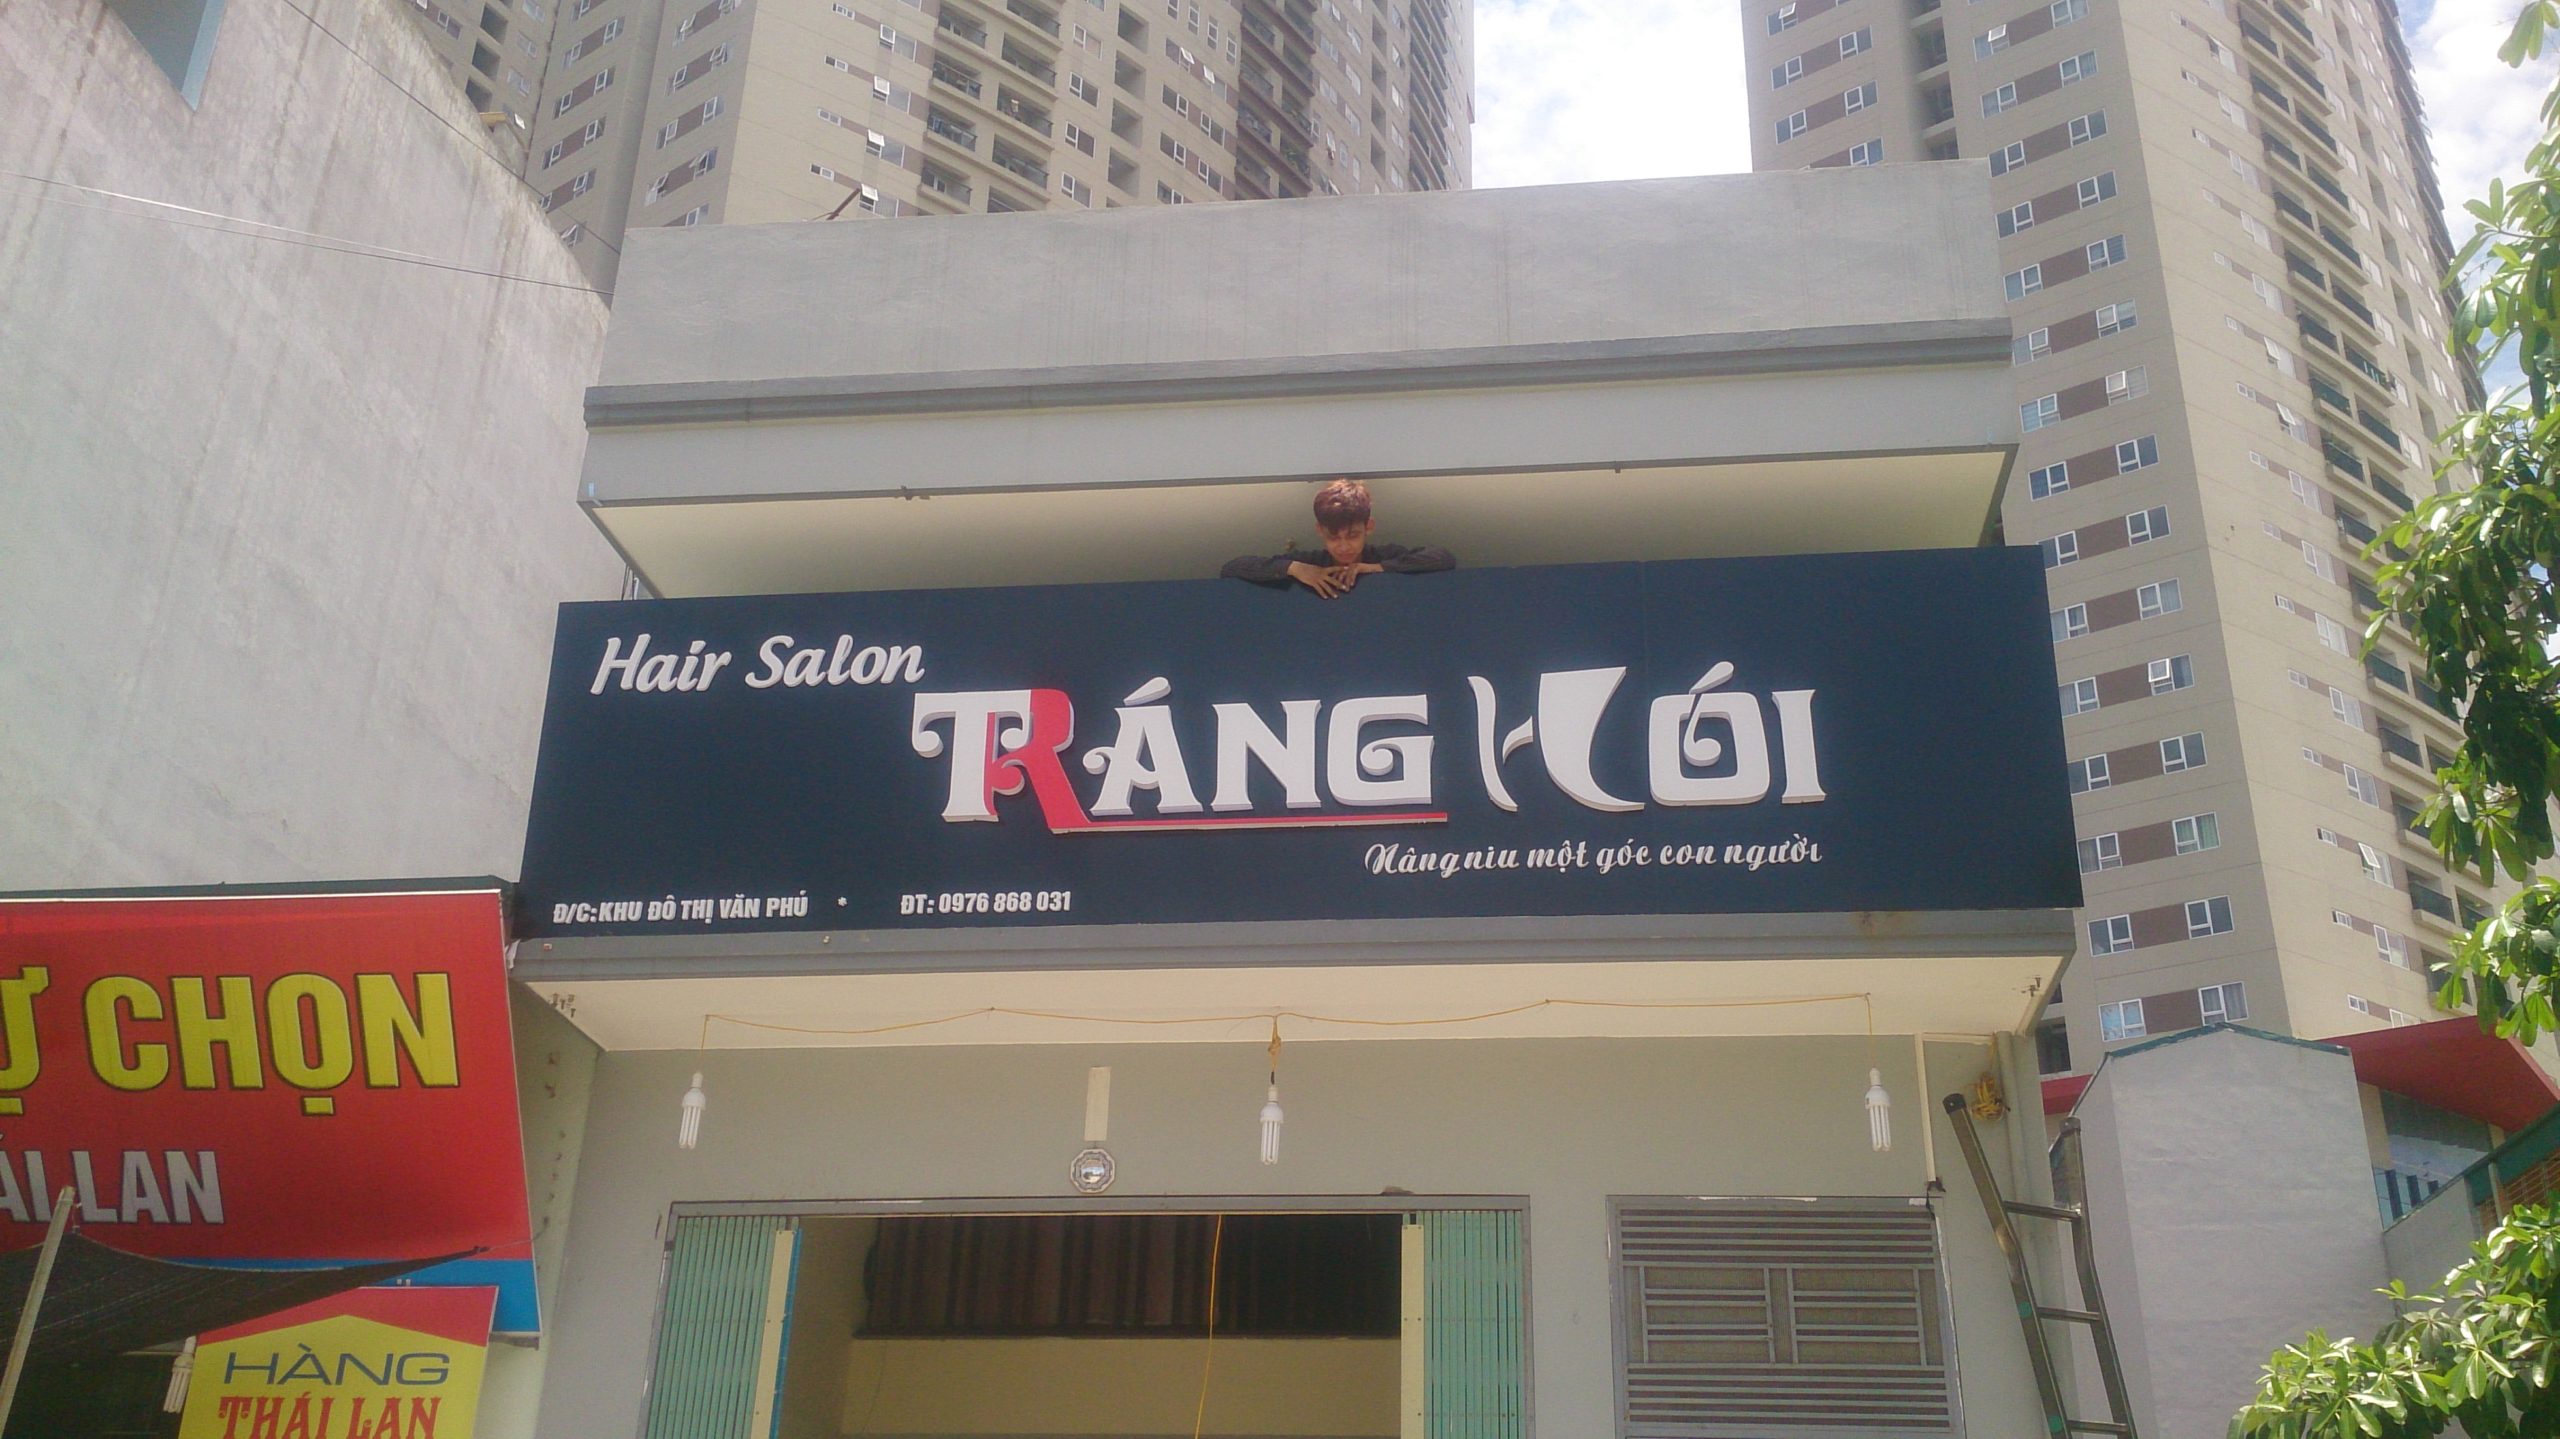 Biển quảng cáo Salon tóc Tráng Hói